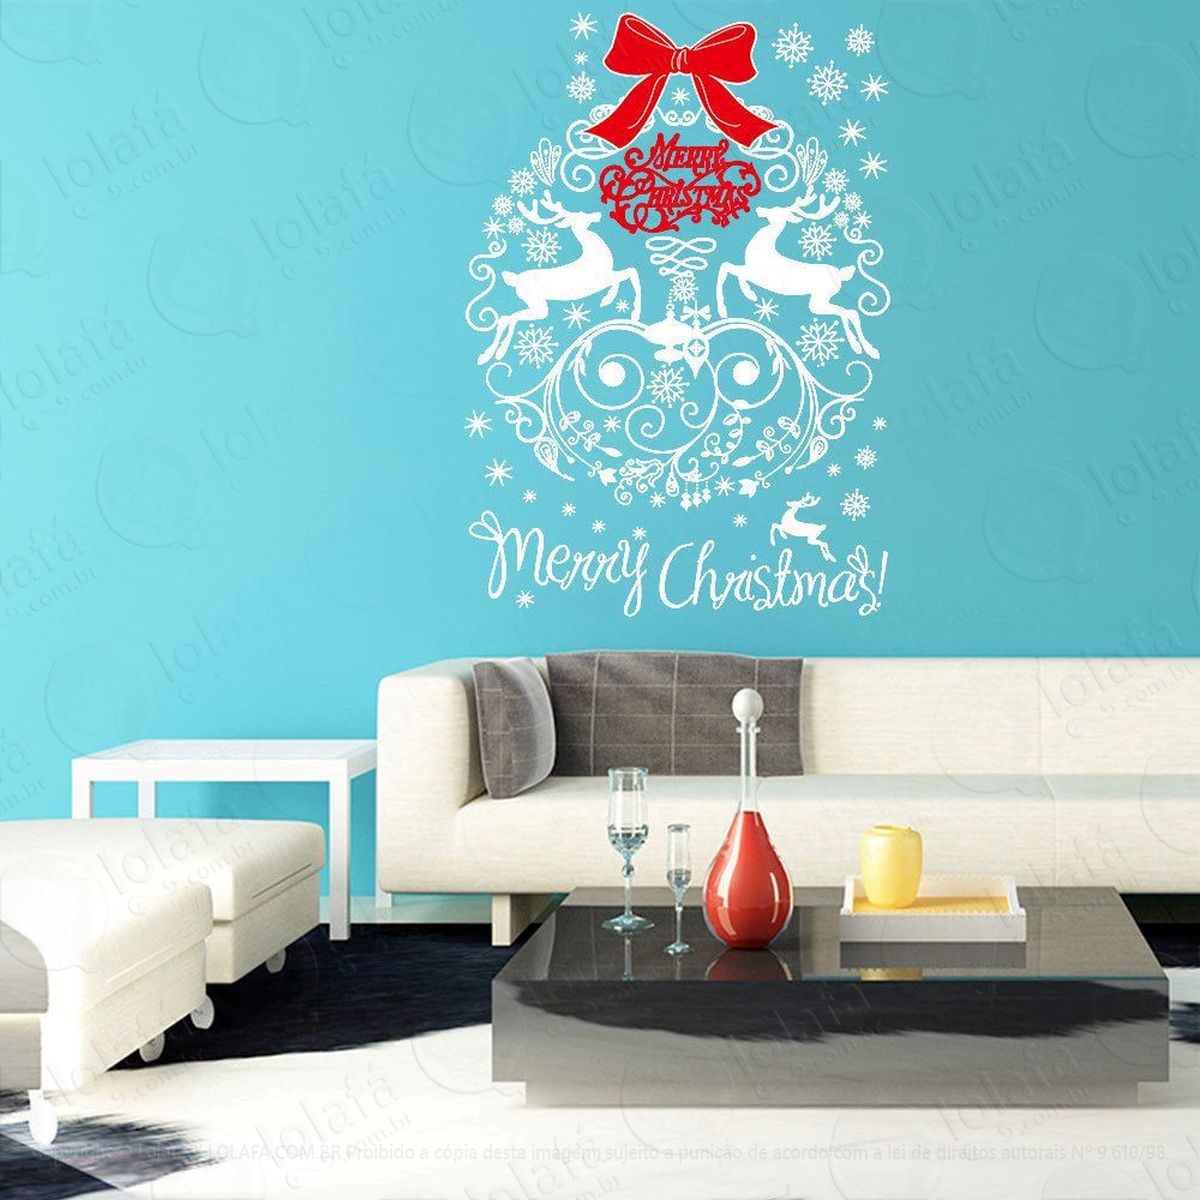 mandala guirlanda adesivo de natal para vitrine, parede, porta de vidro - decoração natalina mod:129